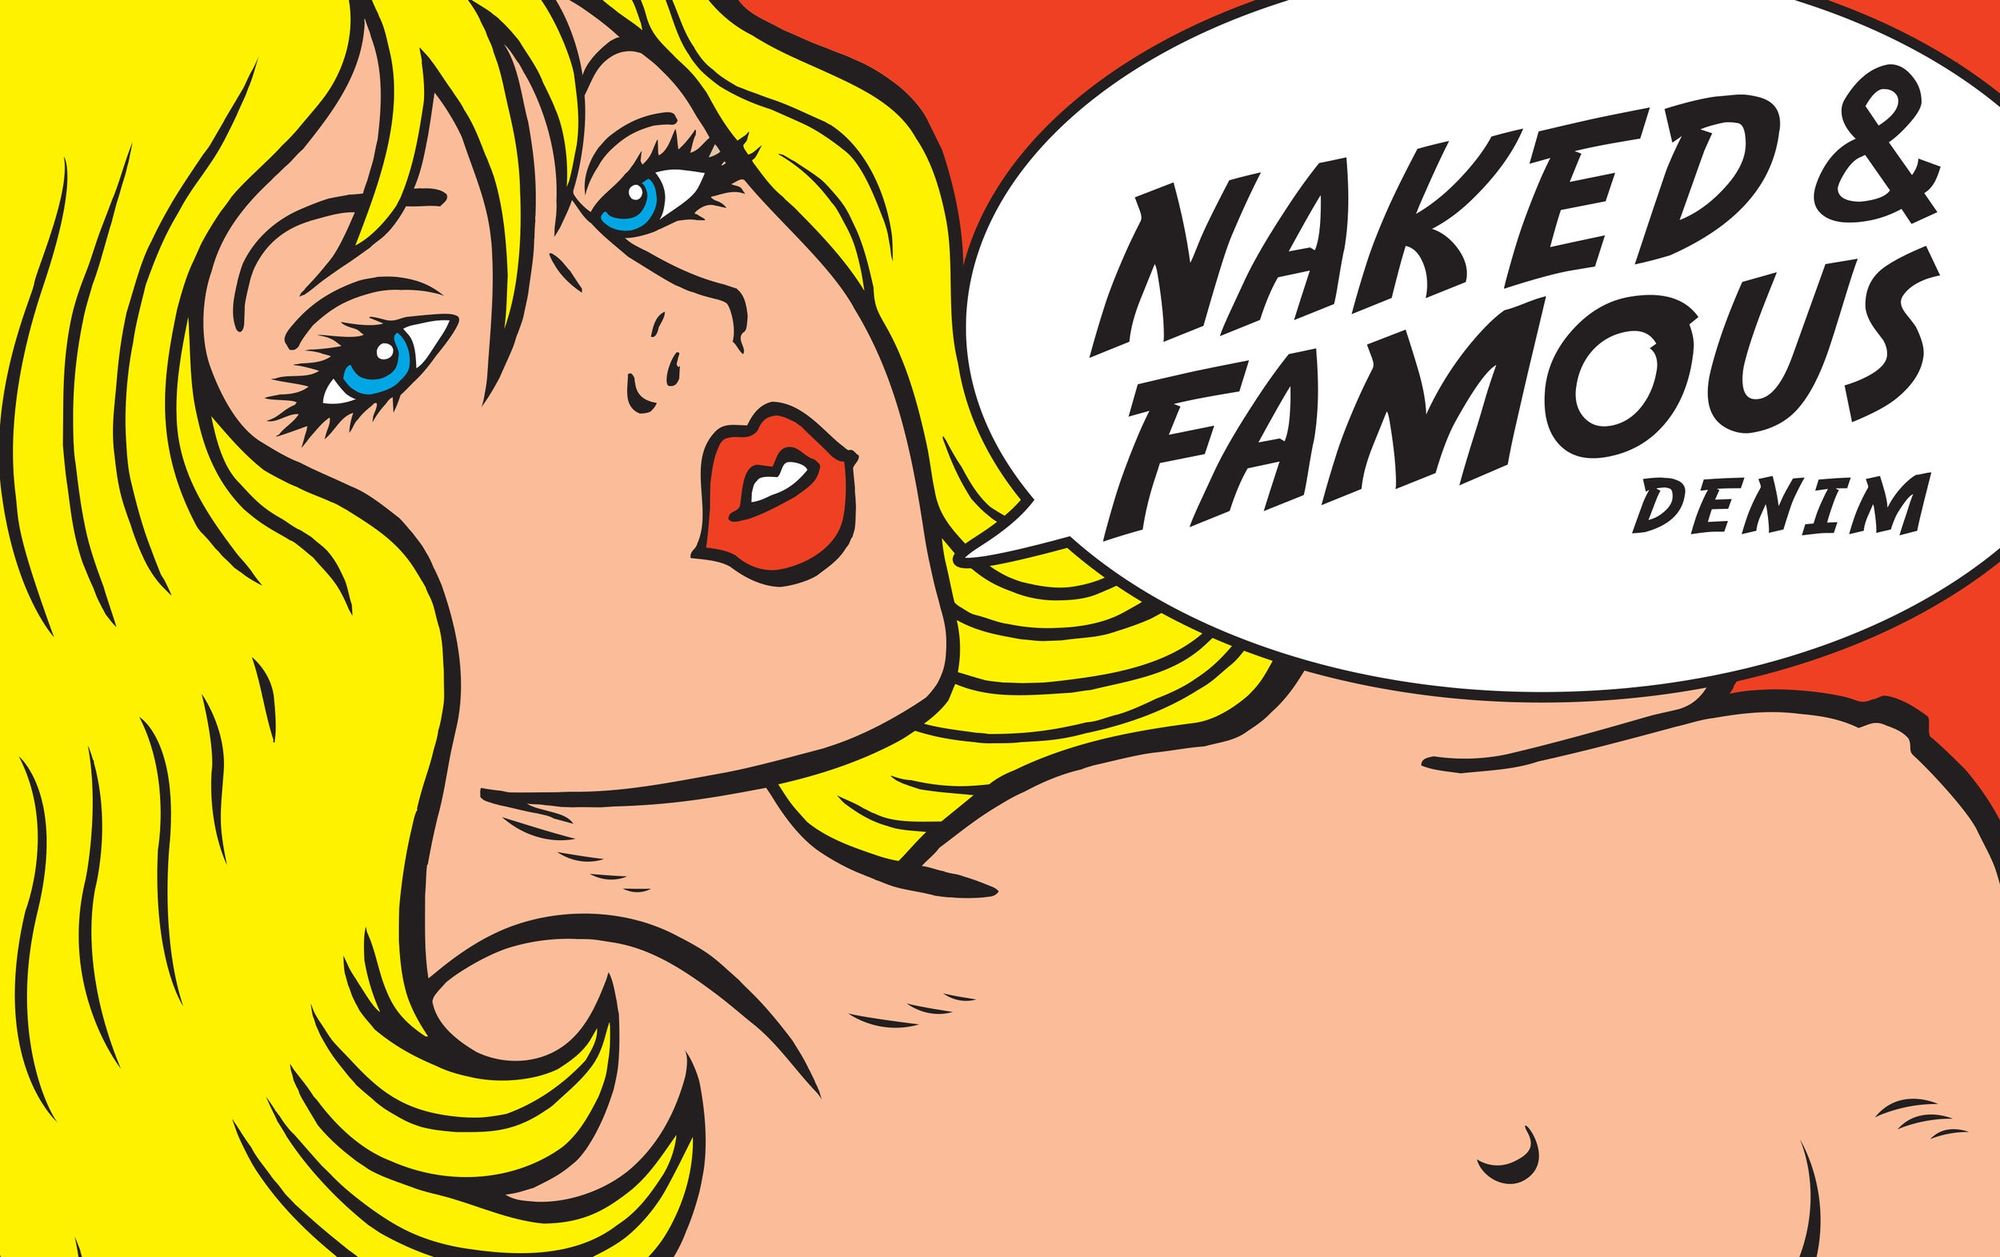 Naked+&+Famous+Denim+Logo+Image